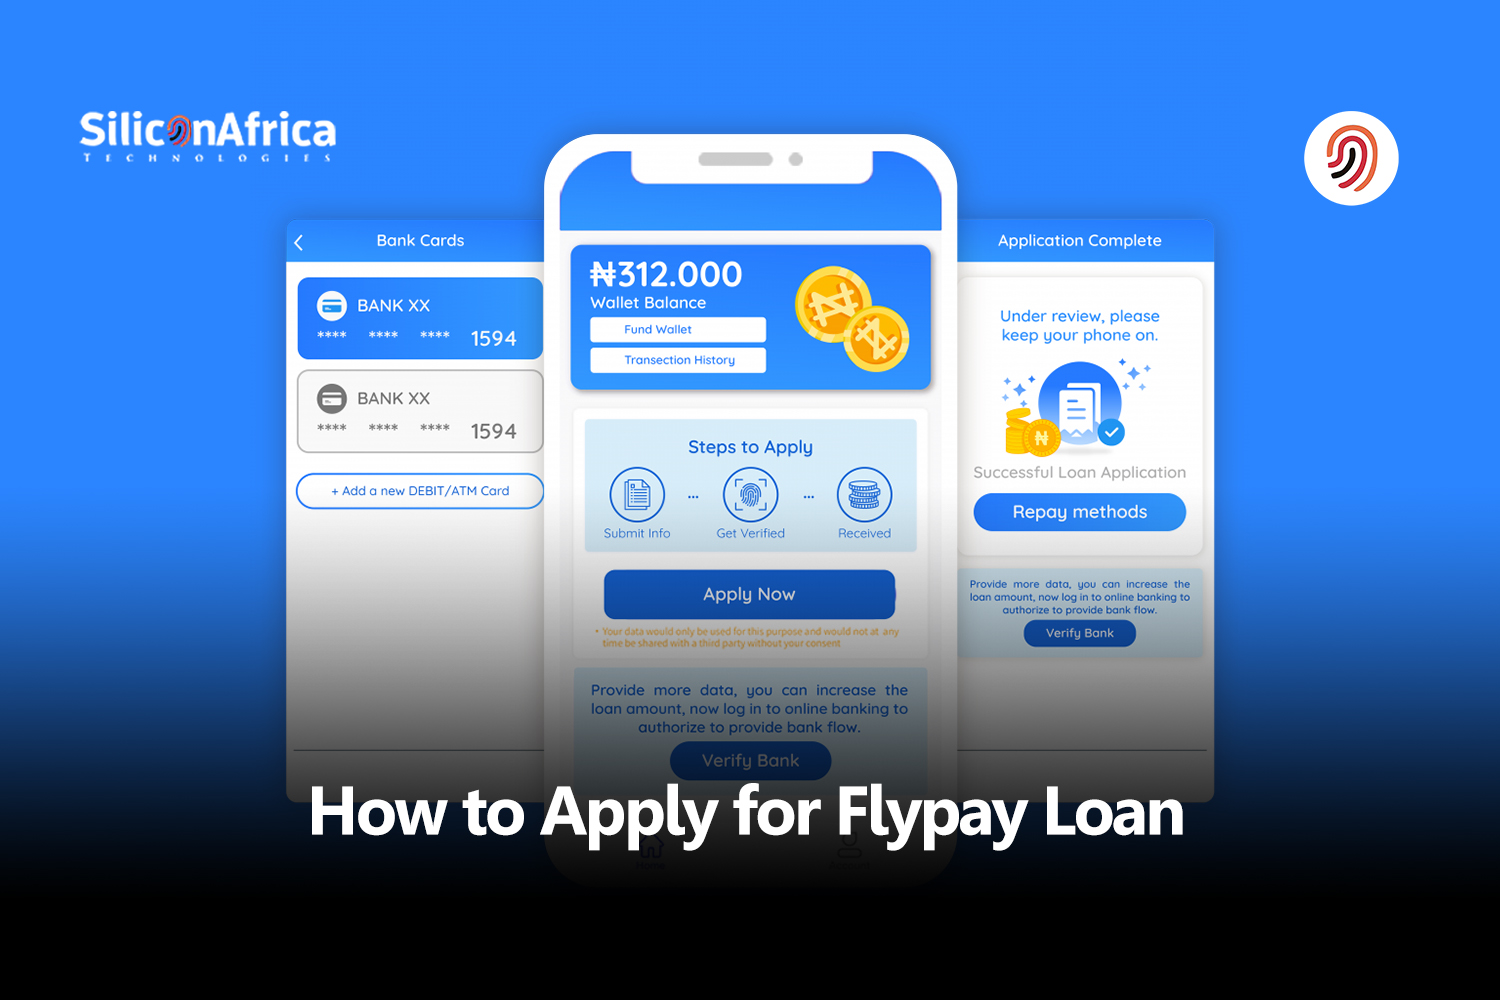 Flypay Loan